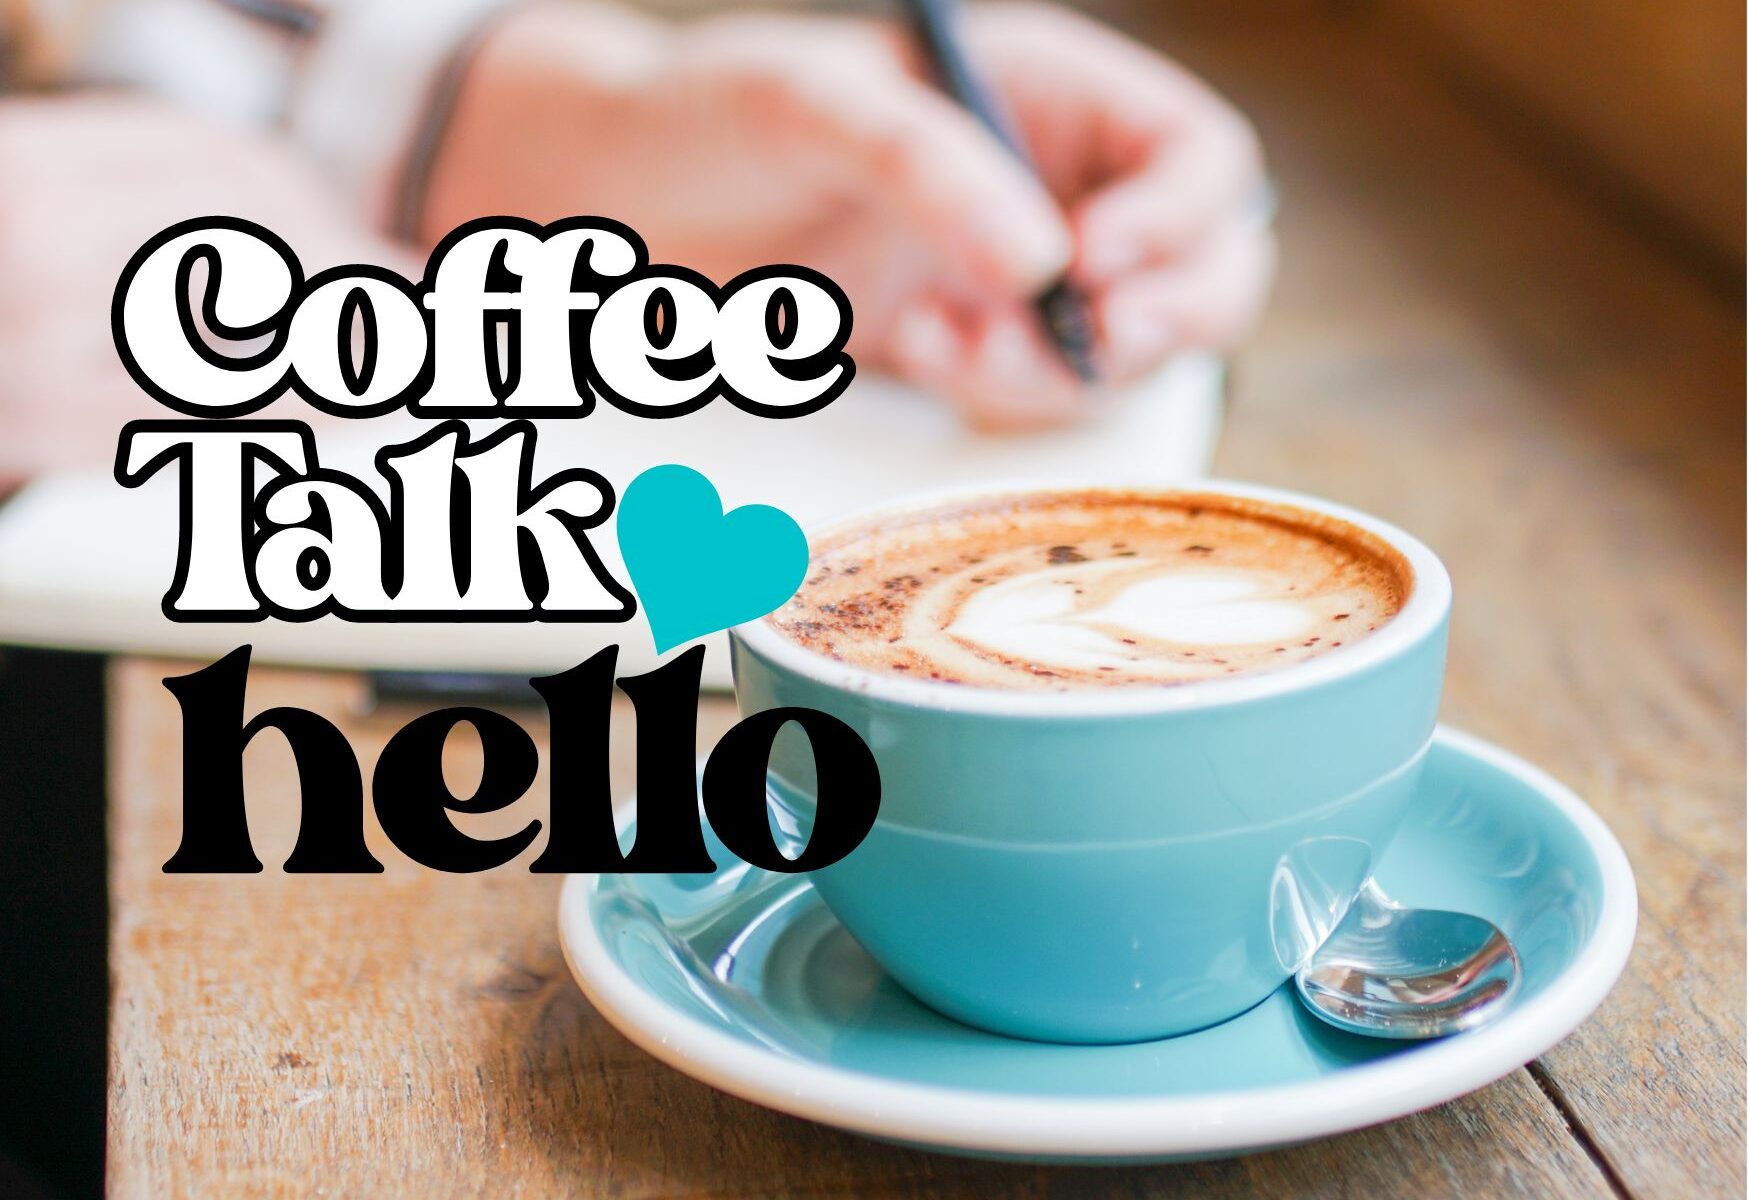 COFFEE TALK HELLO GRUPO DE APOYO HELLO INFERTILIDAD